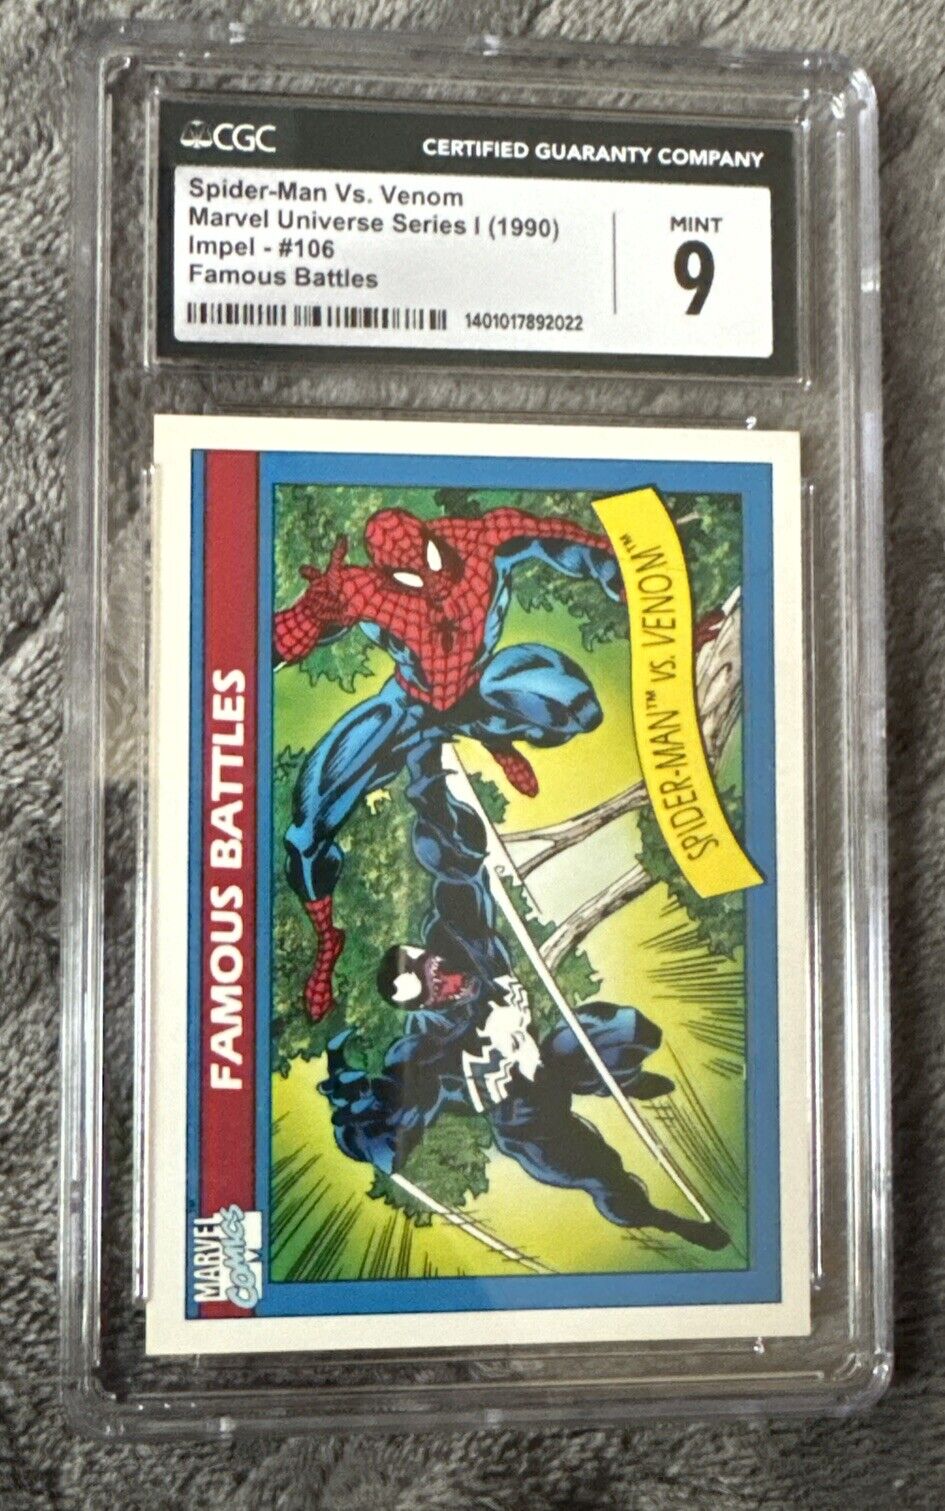 1990 Impel Marvel Universe Venom Vs Spider-Man CGC 9 Rare